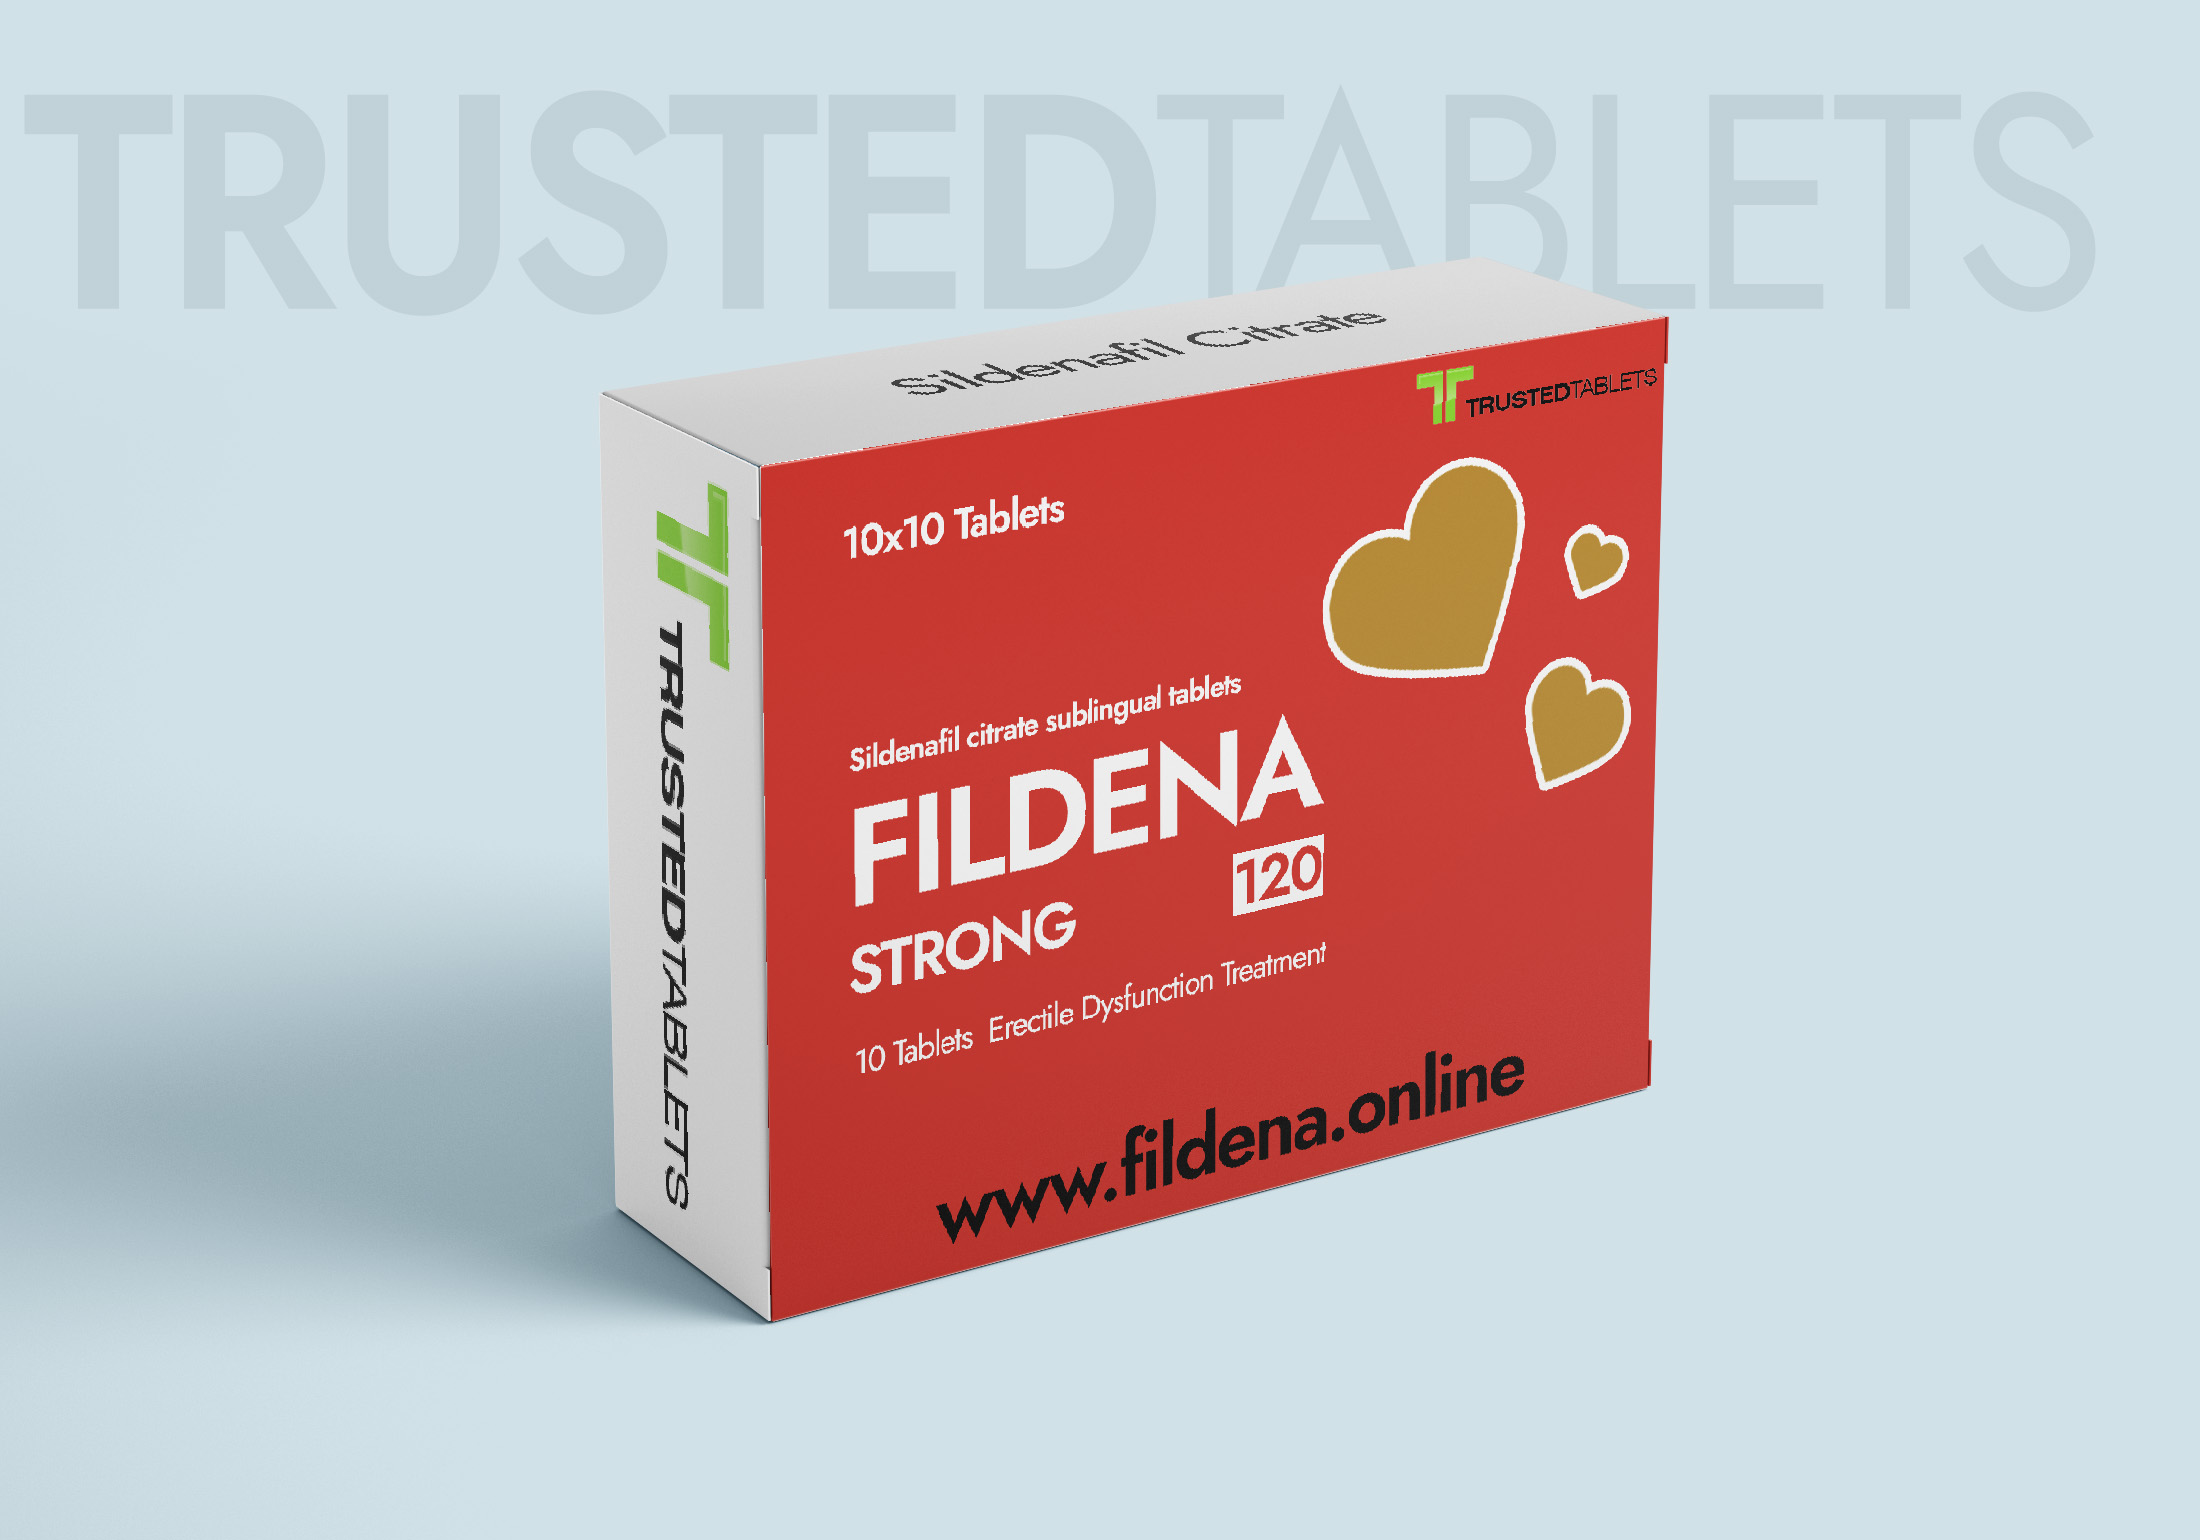 Fildena Strong TrustedTablets